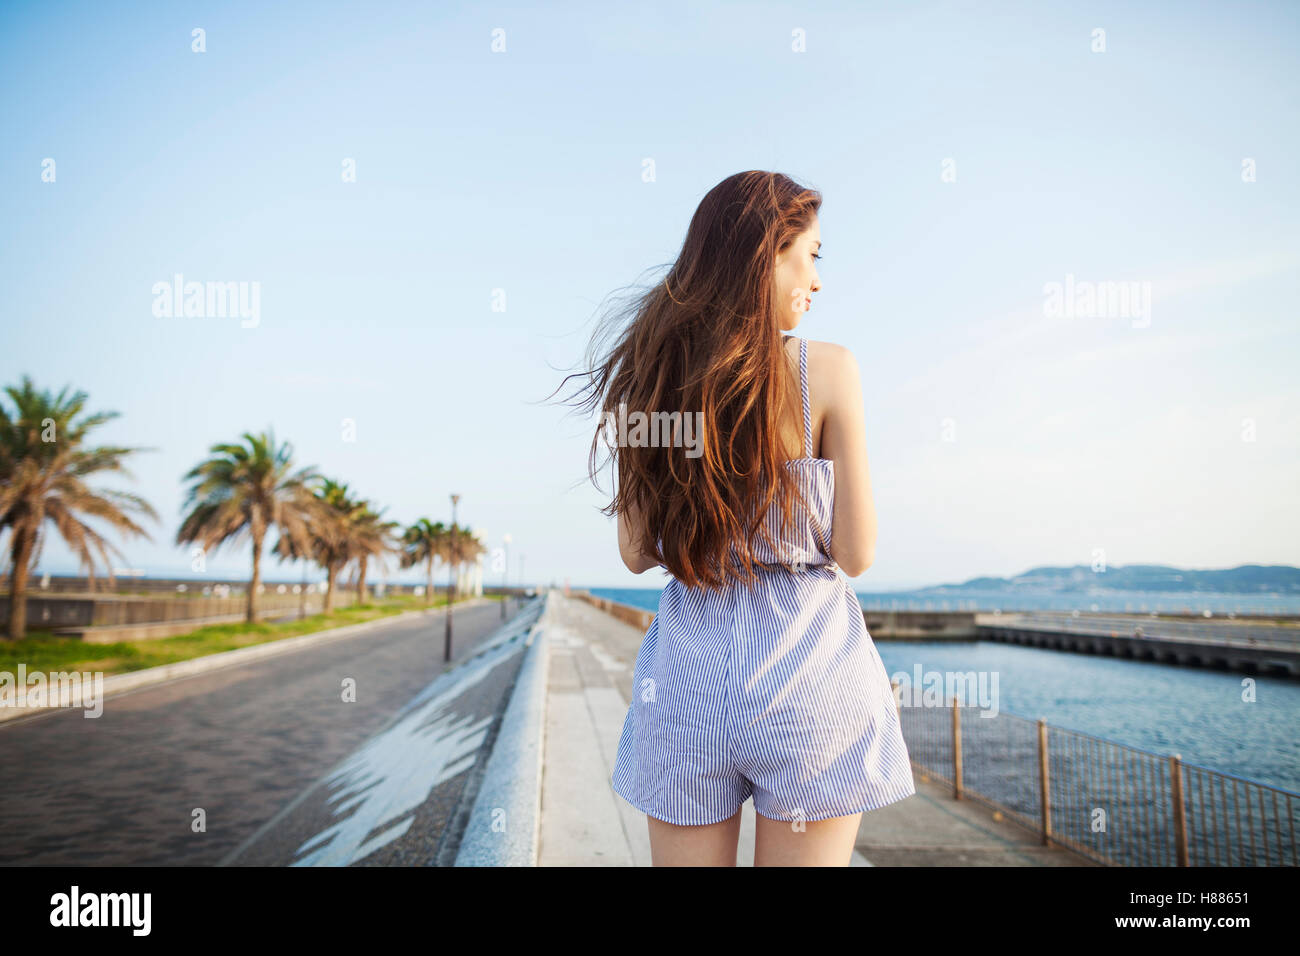 Rückansicht des junge Frau mit langen roten Haaren stehen im offenen Raum durch eine Straße an der Küste. Stockfoto